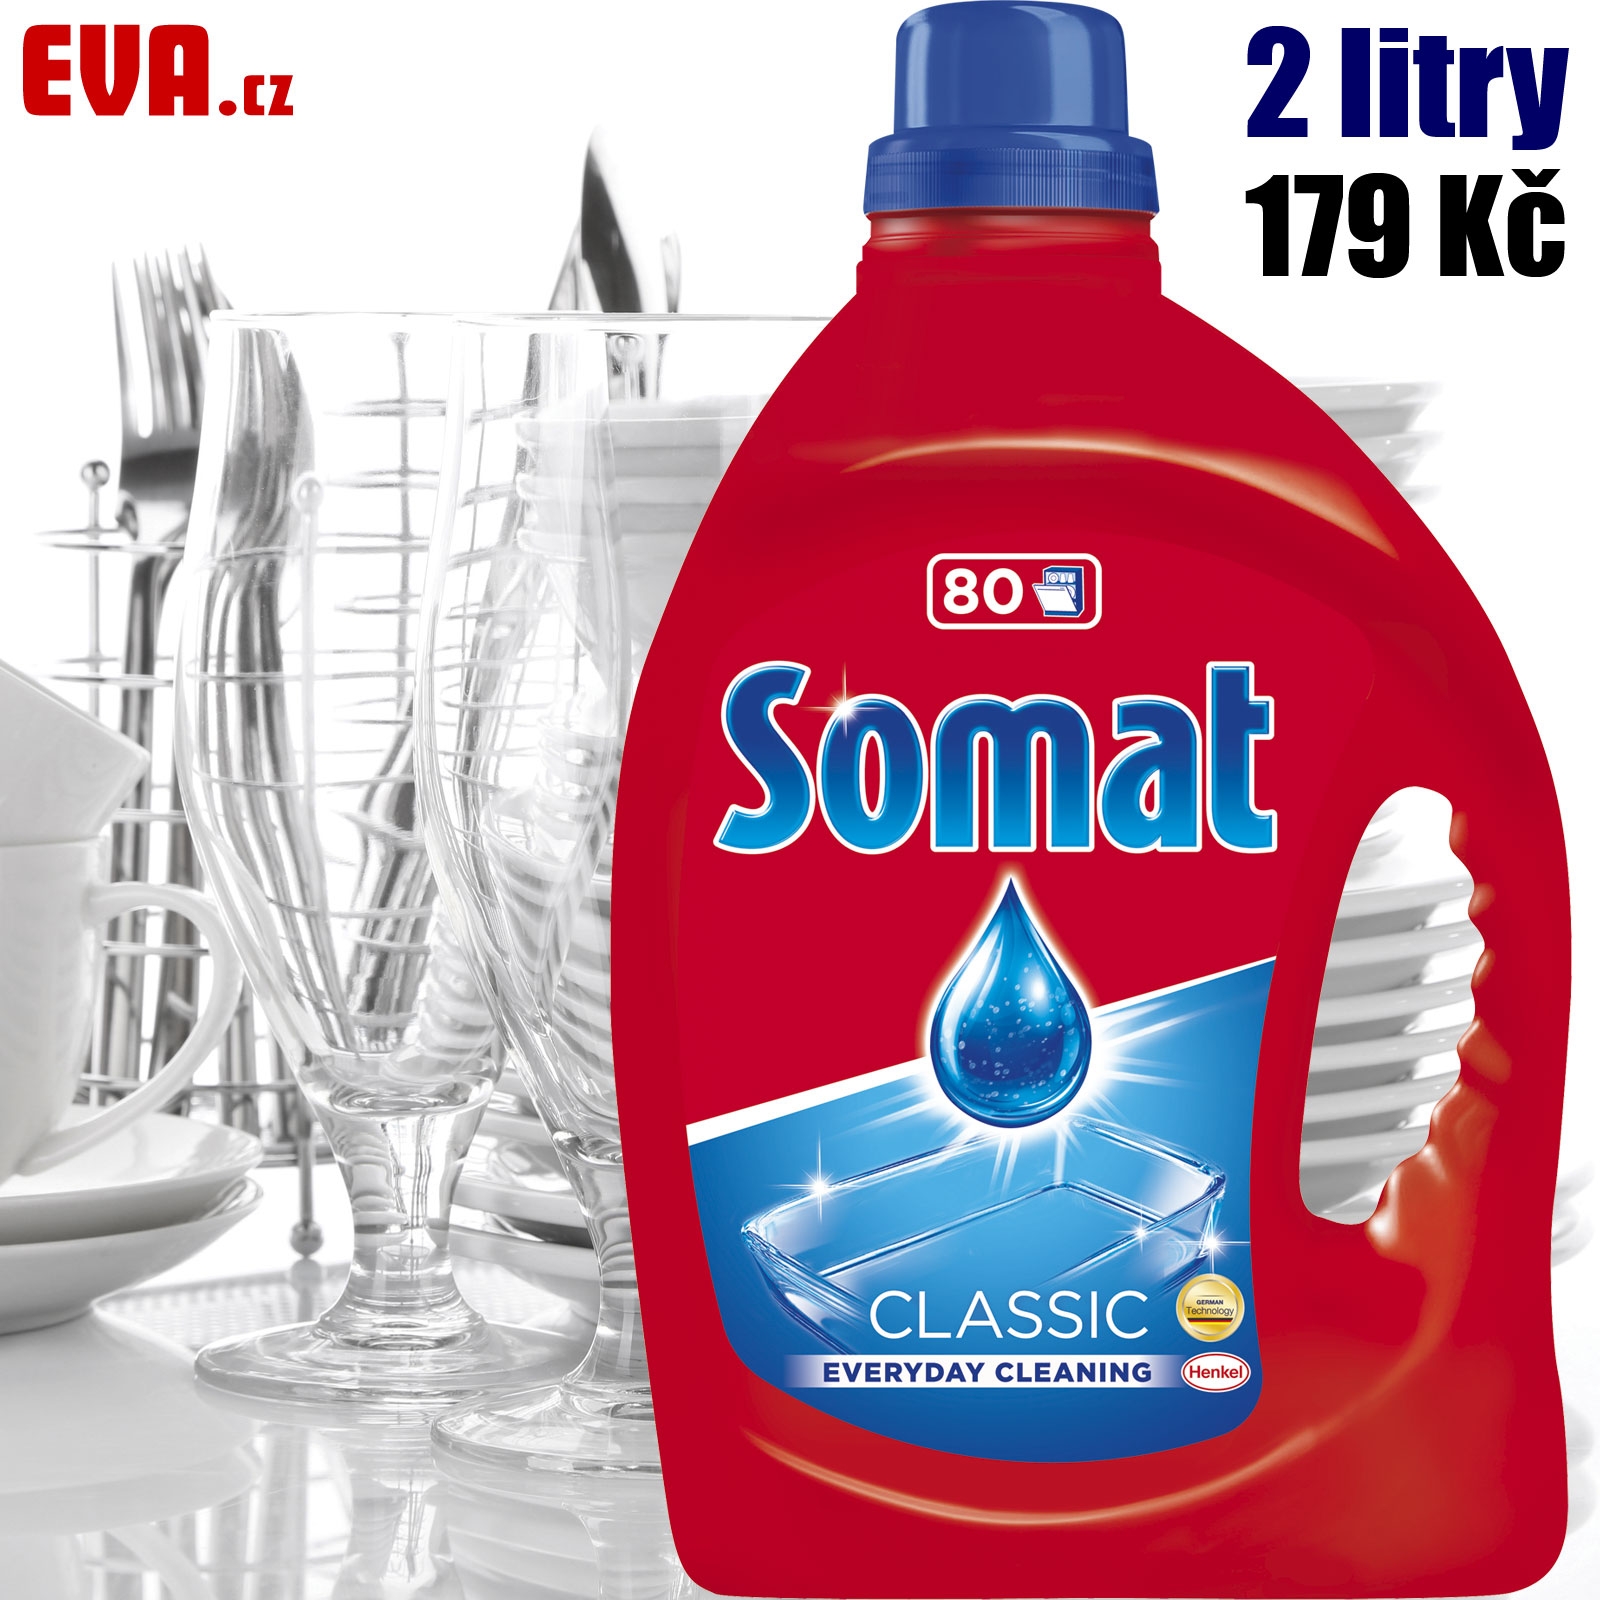 SOMAT Classic gel 2 l 179 Kč